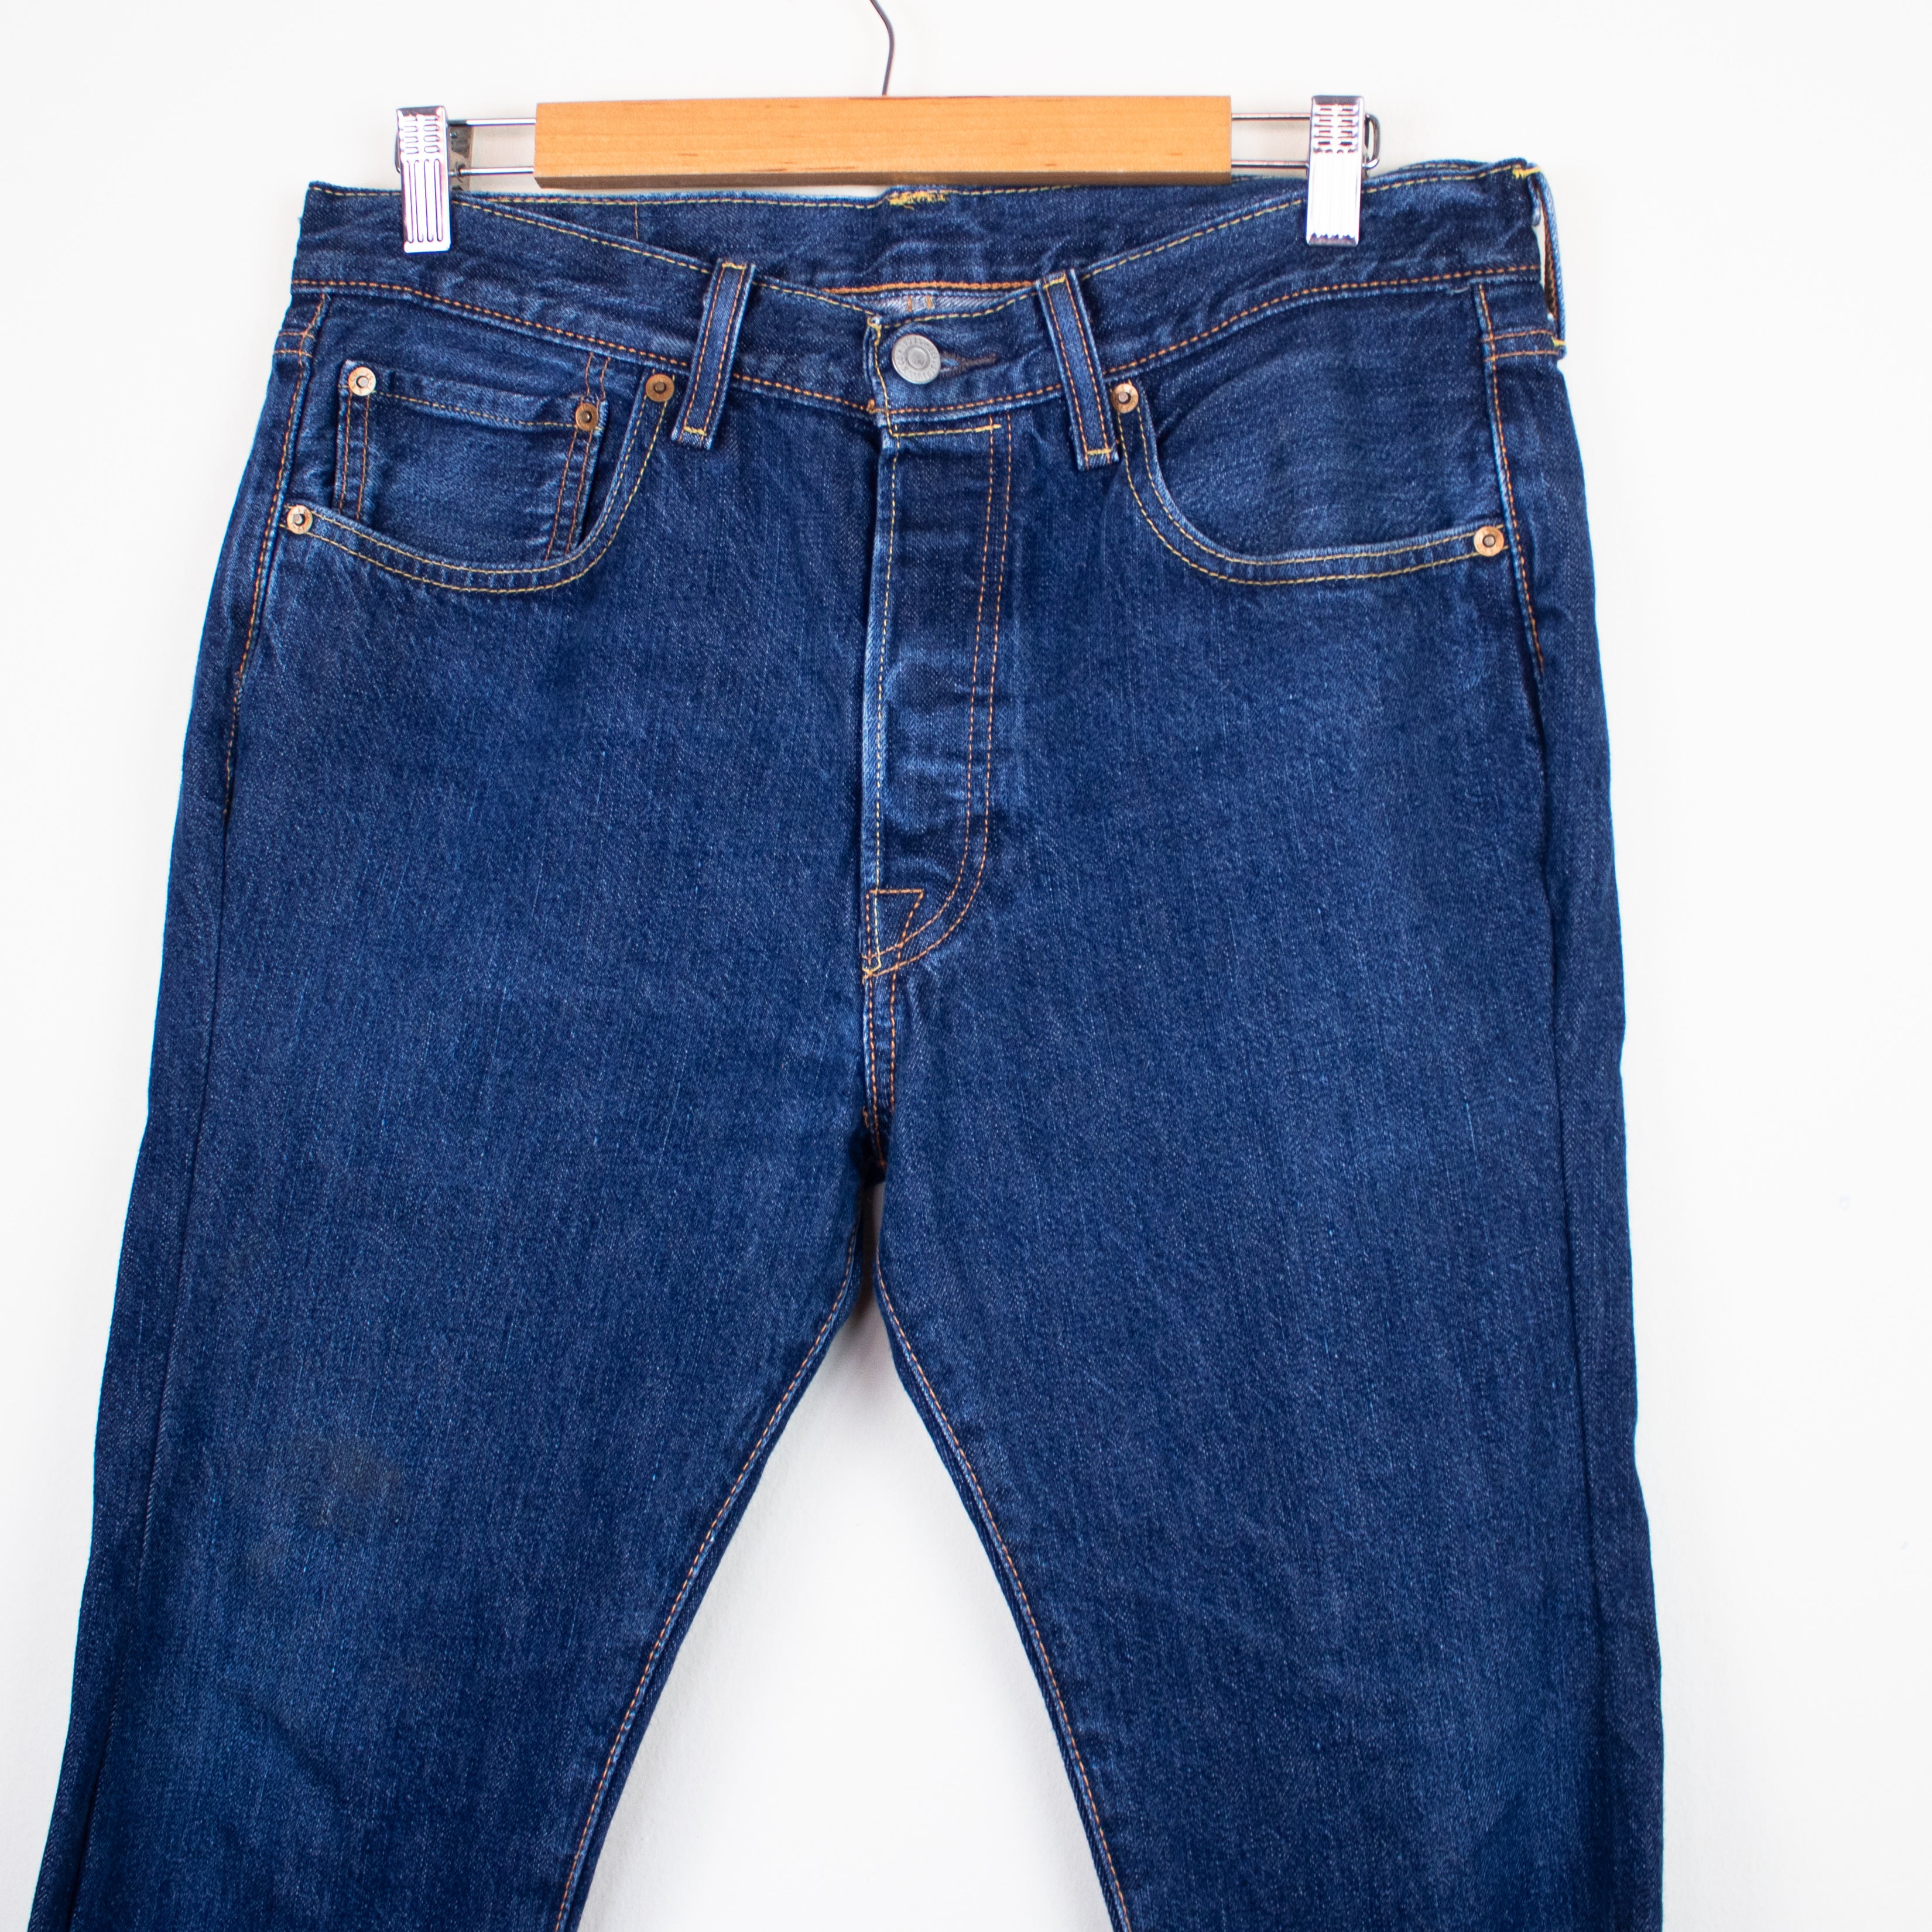 Preços baixos em Levi's 501 Original Fit Jeans para mulheres